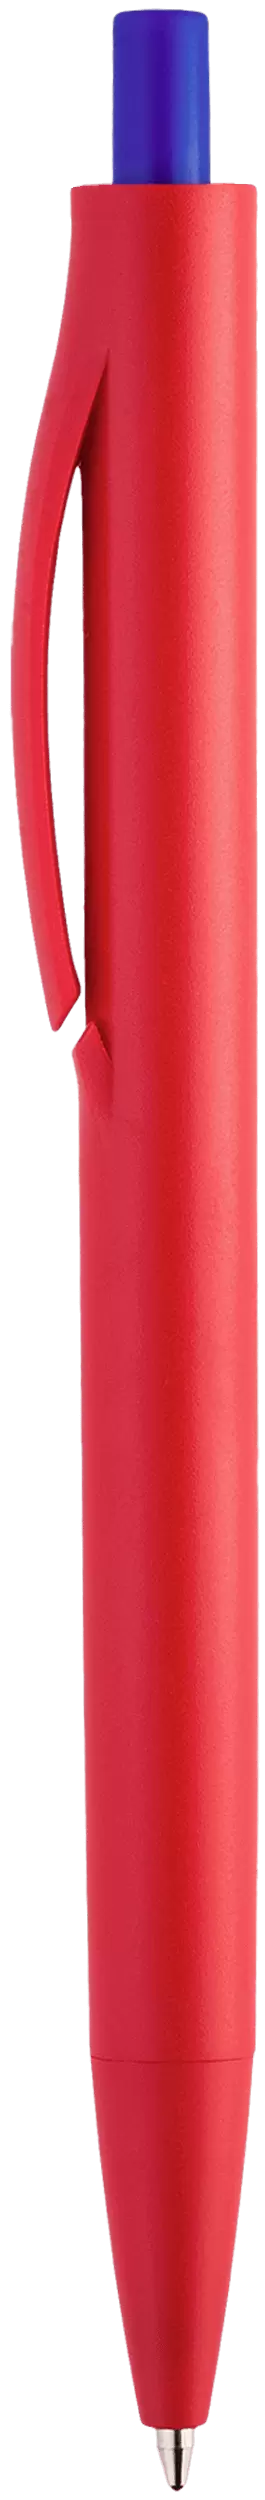 Ручка IGLA COLOR Красная с синей кнопкой 1031-03-01